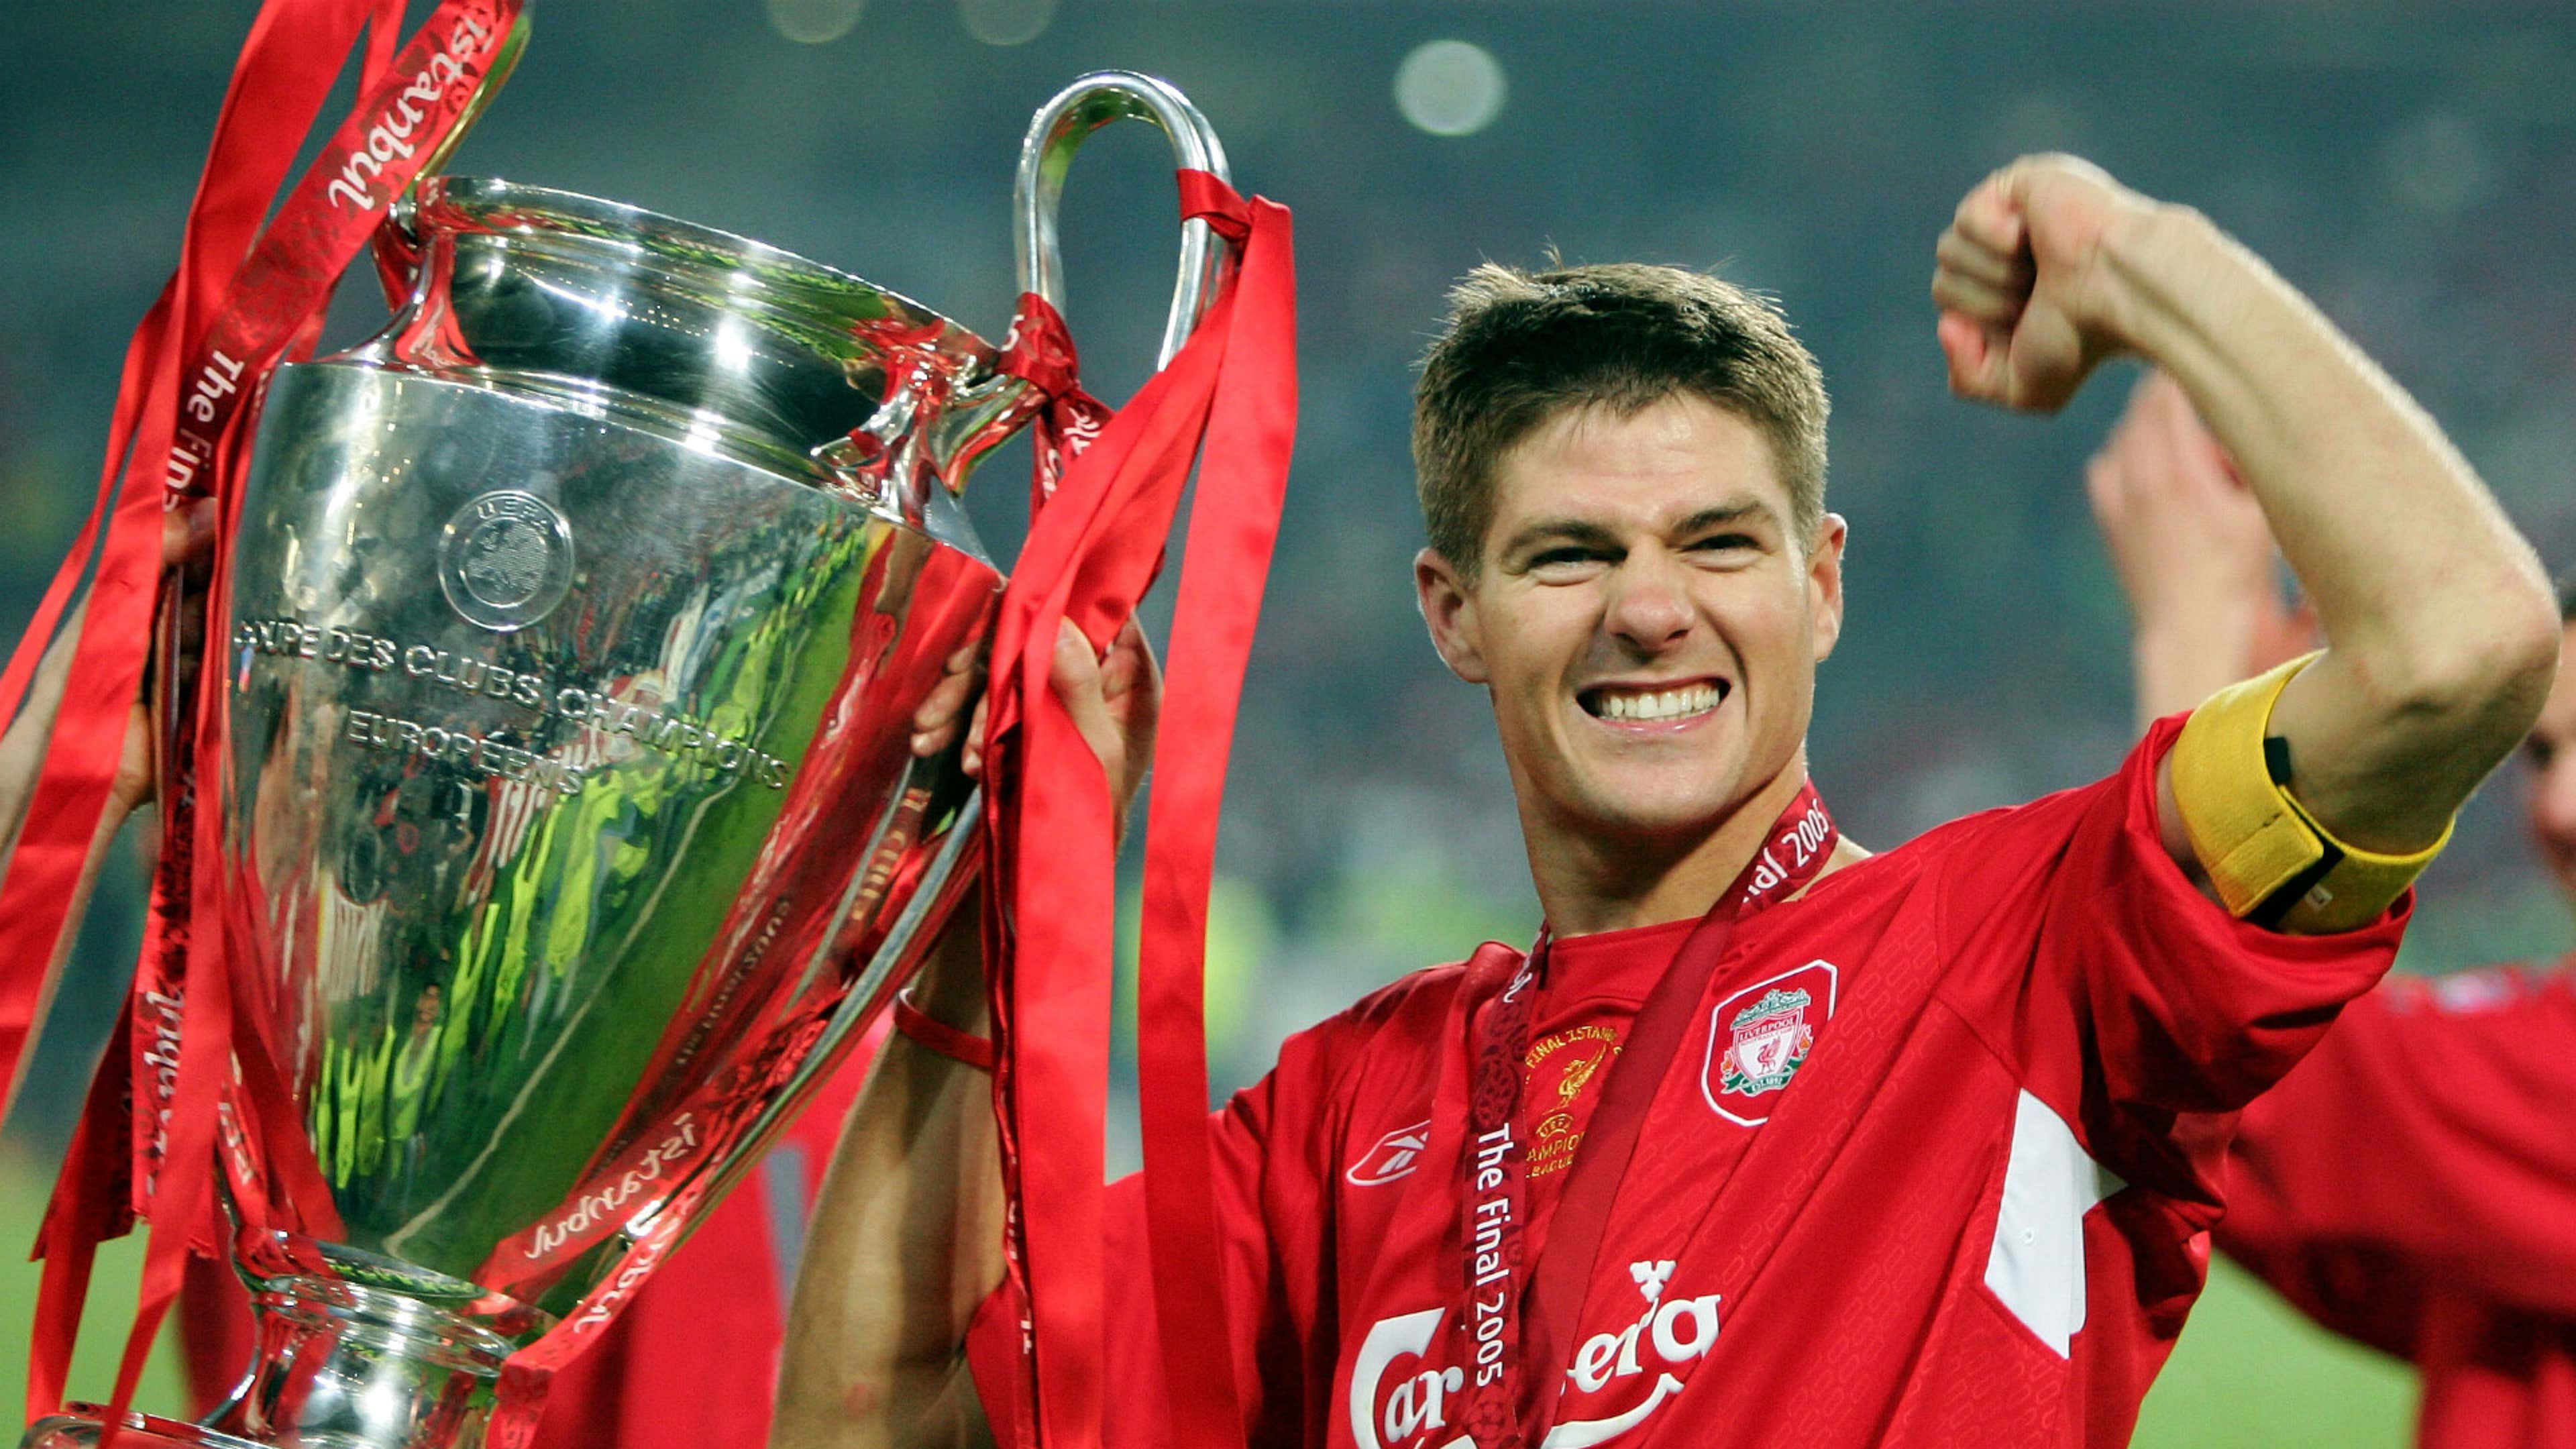 Steven Gerrard Liverpool 2005